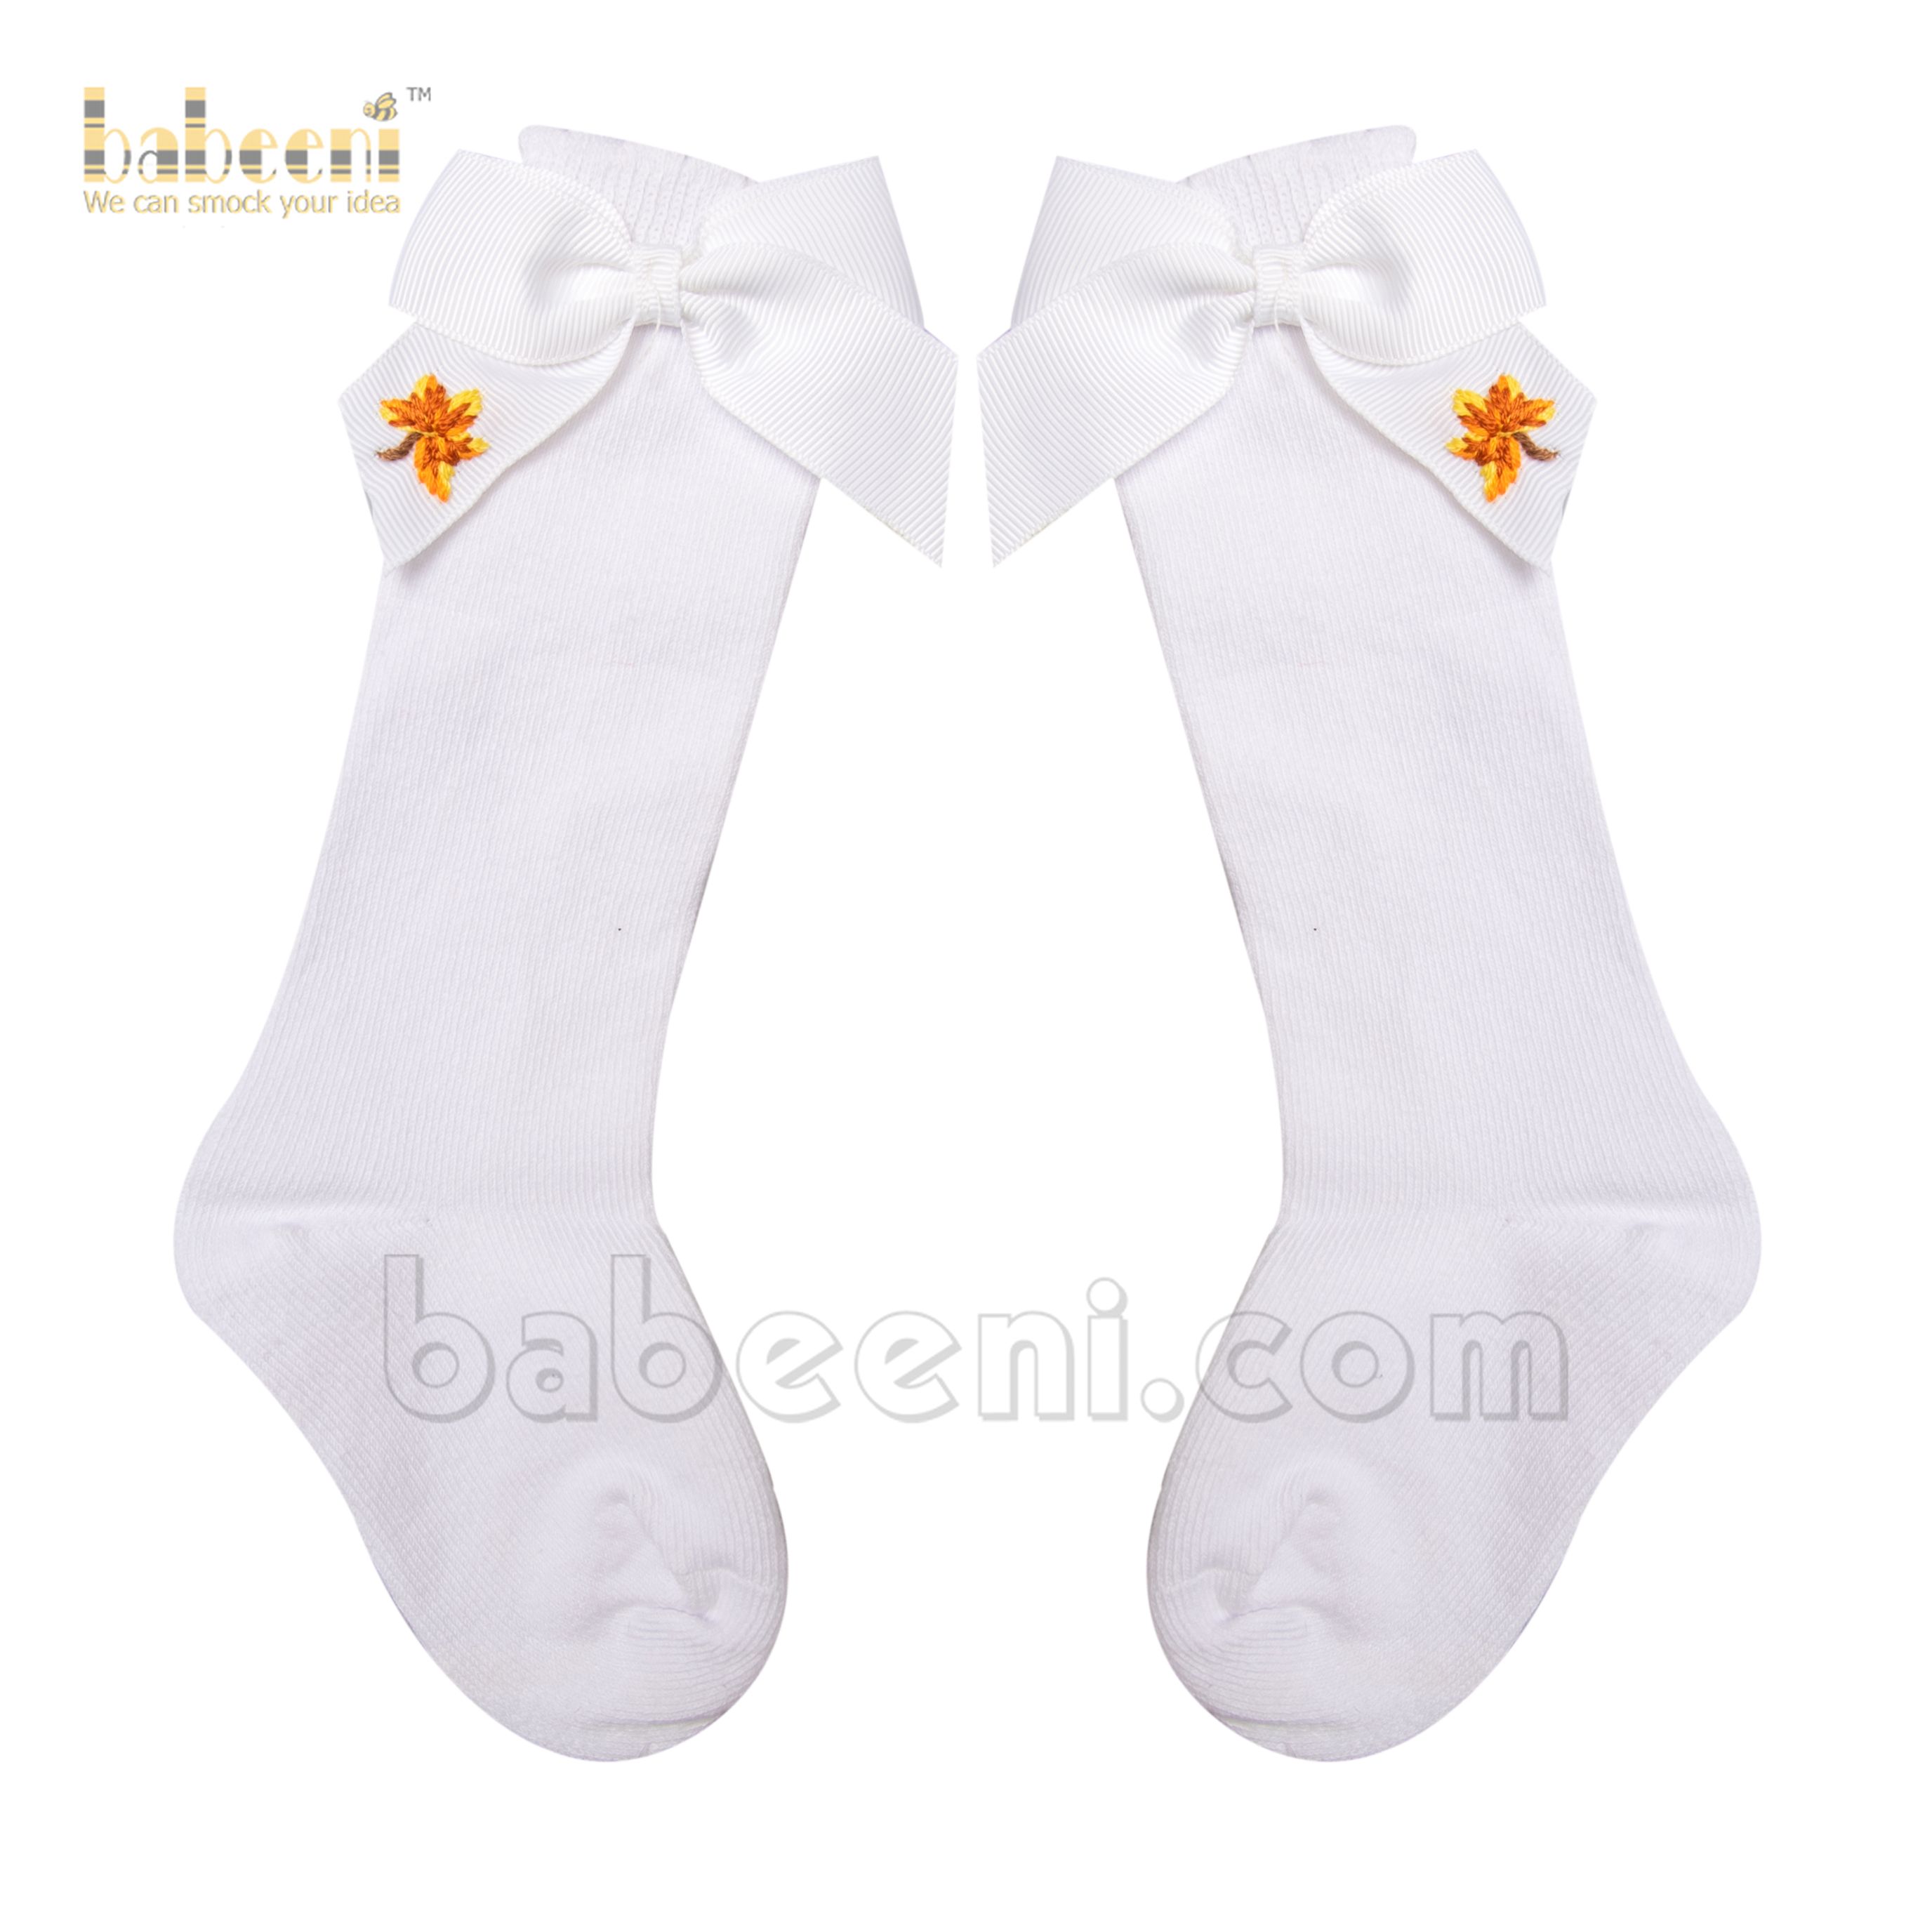 Leaf baby socks for little girls - HS  27